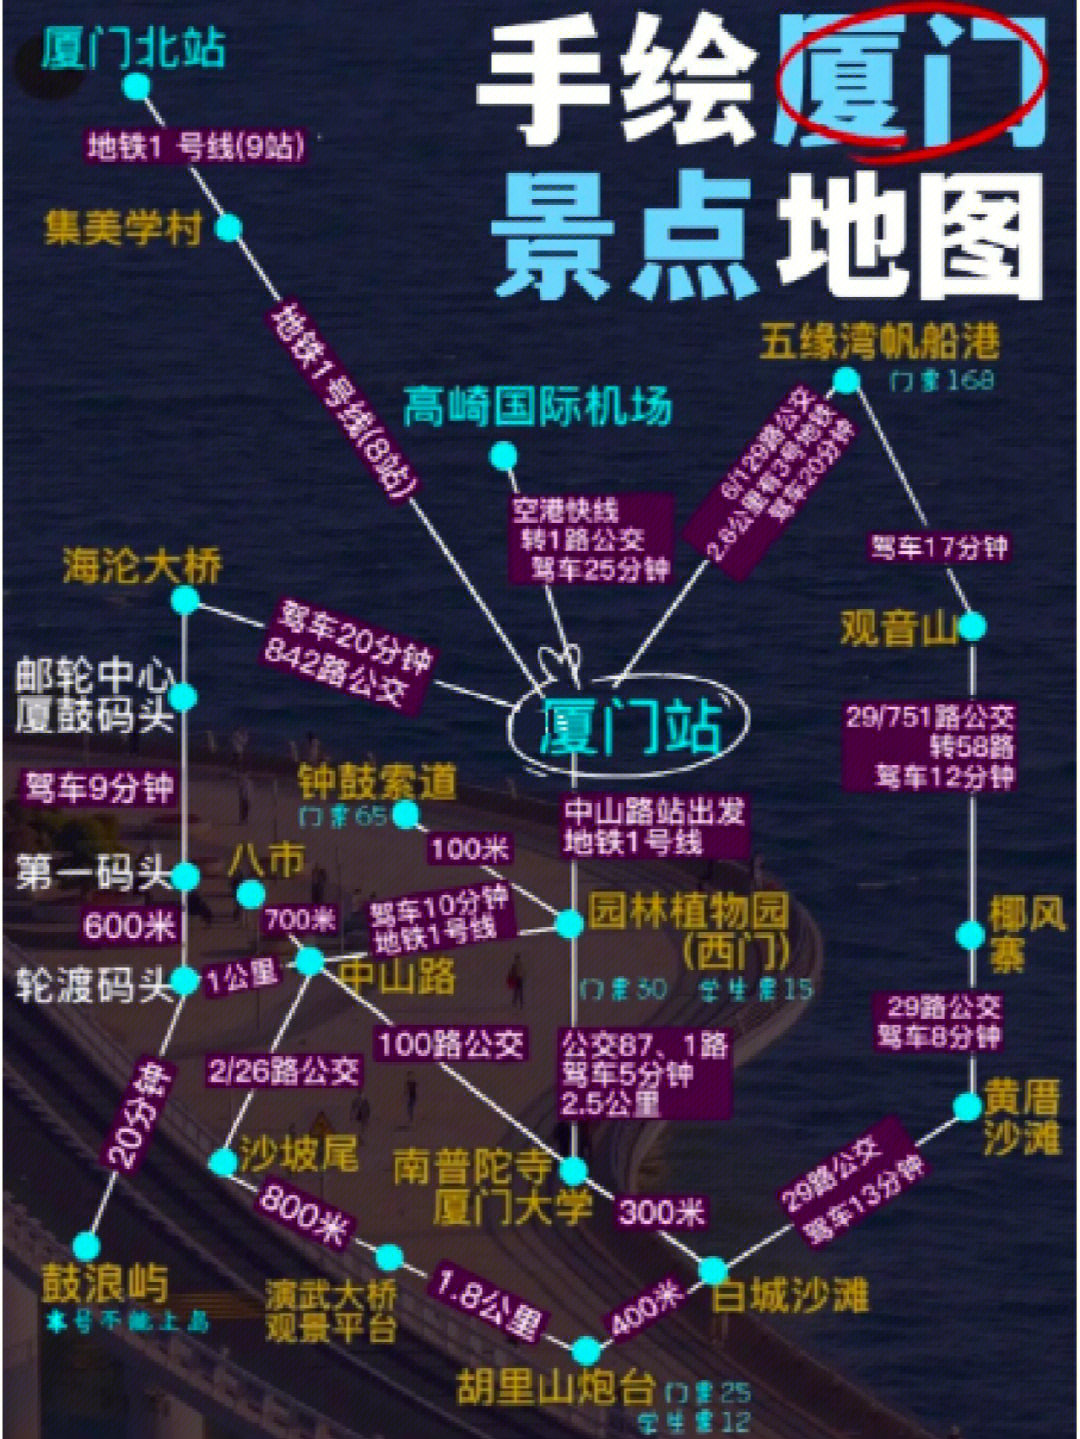 厦门北站内部地图图片